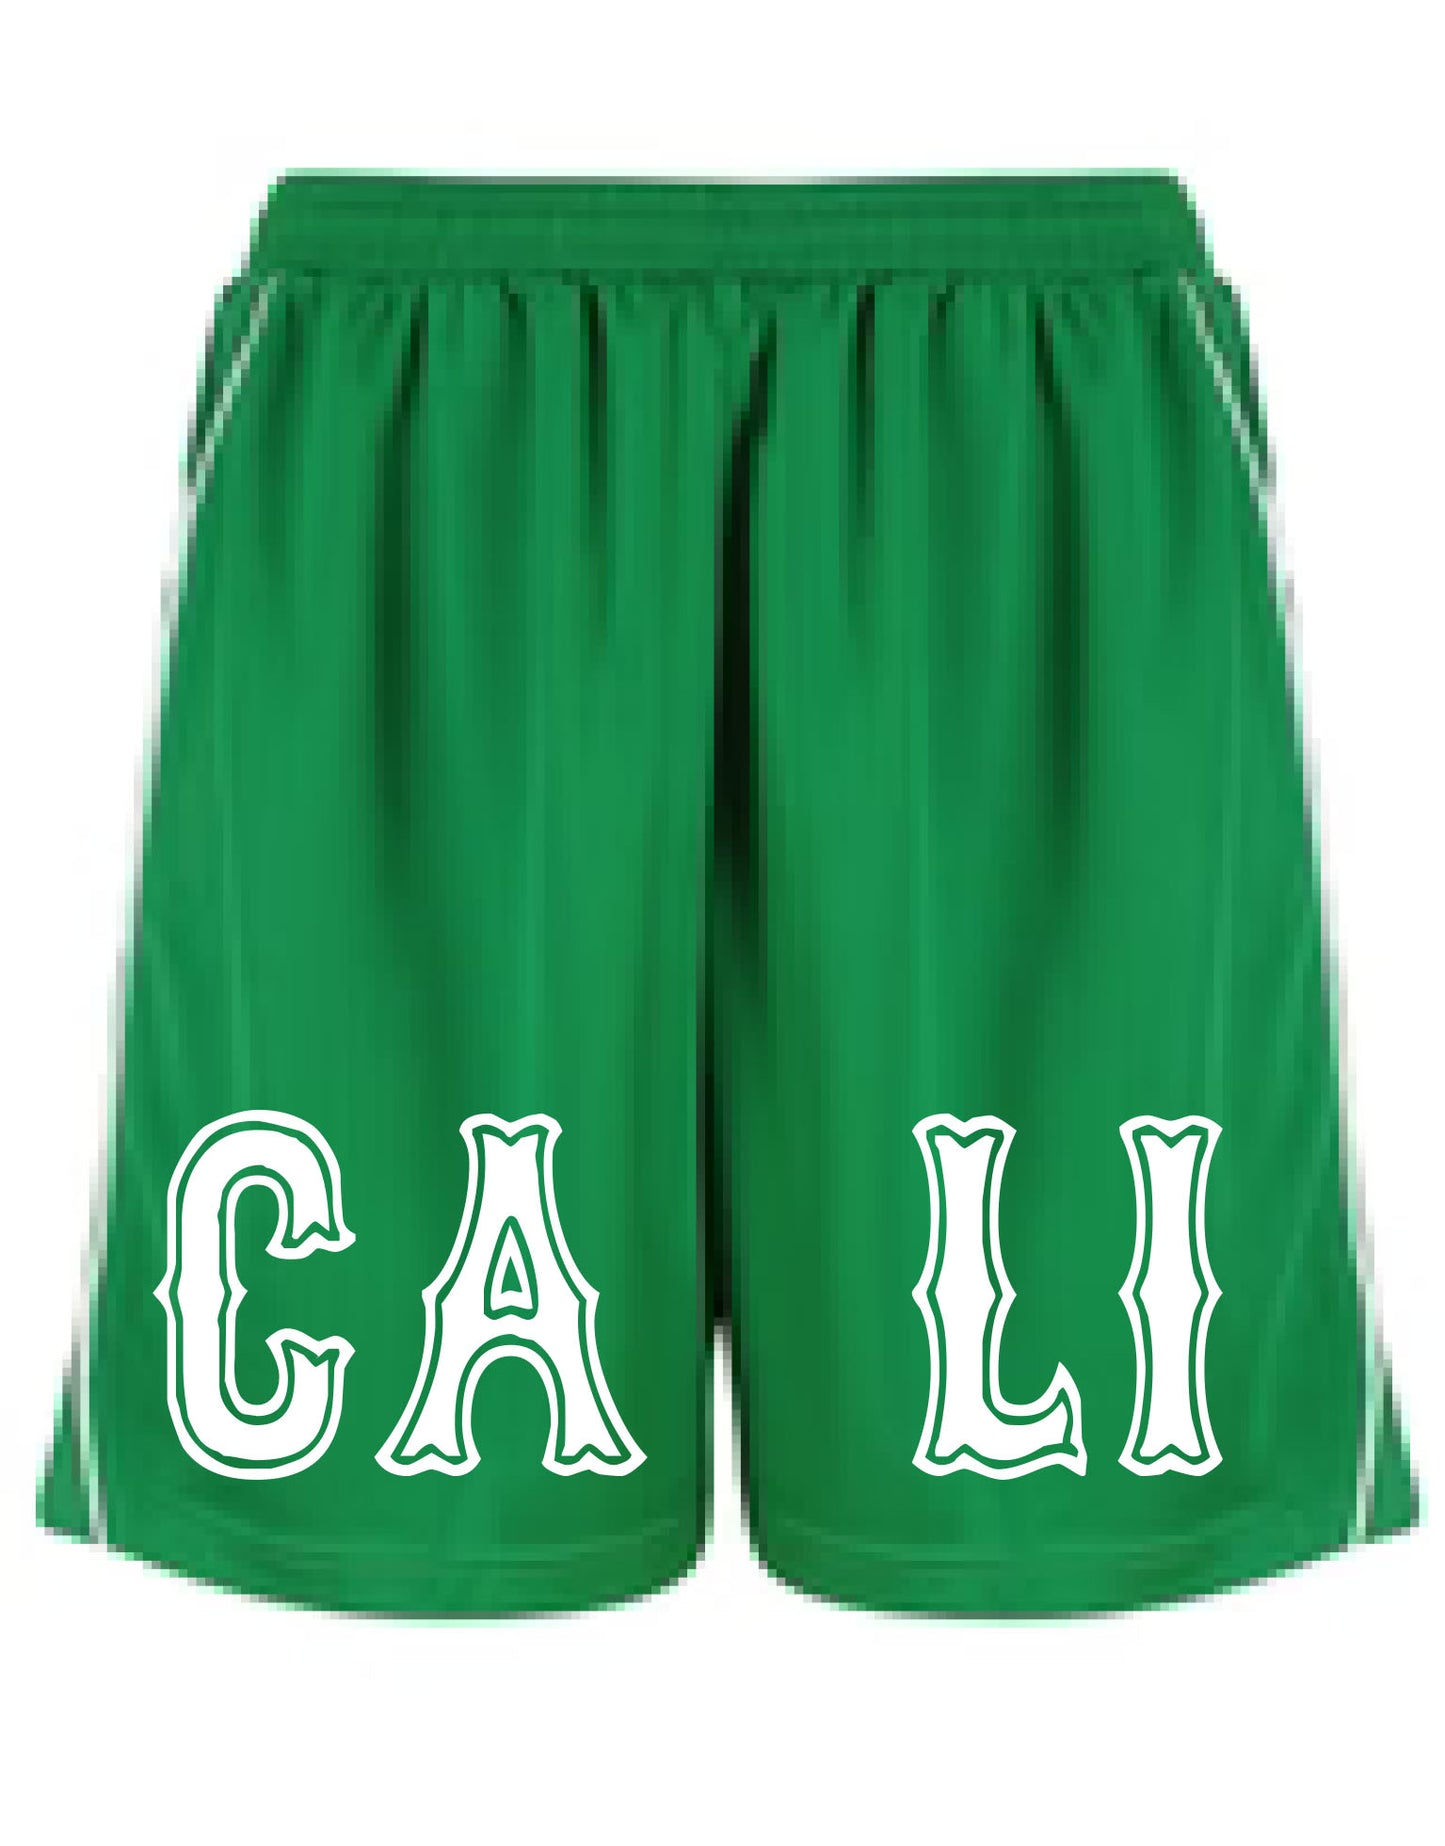 Boston Mesh Shorts - Green